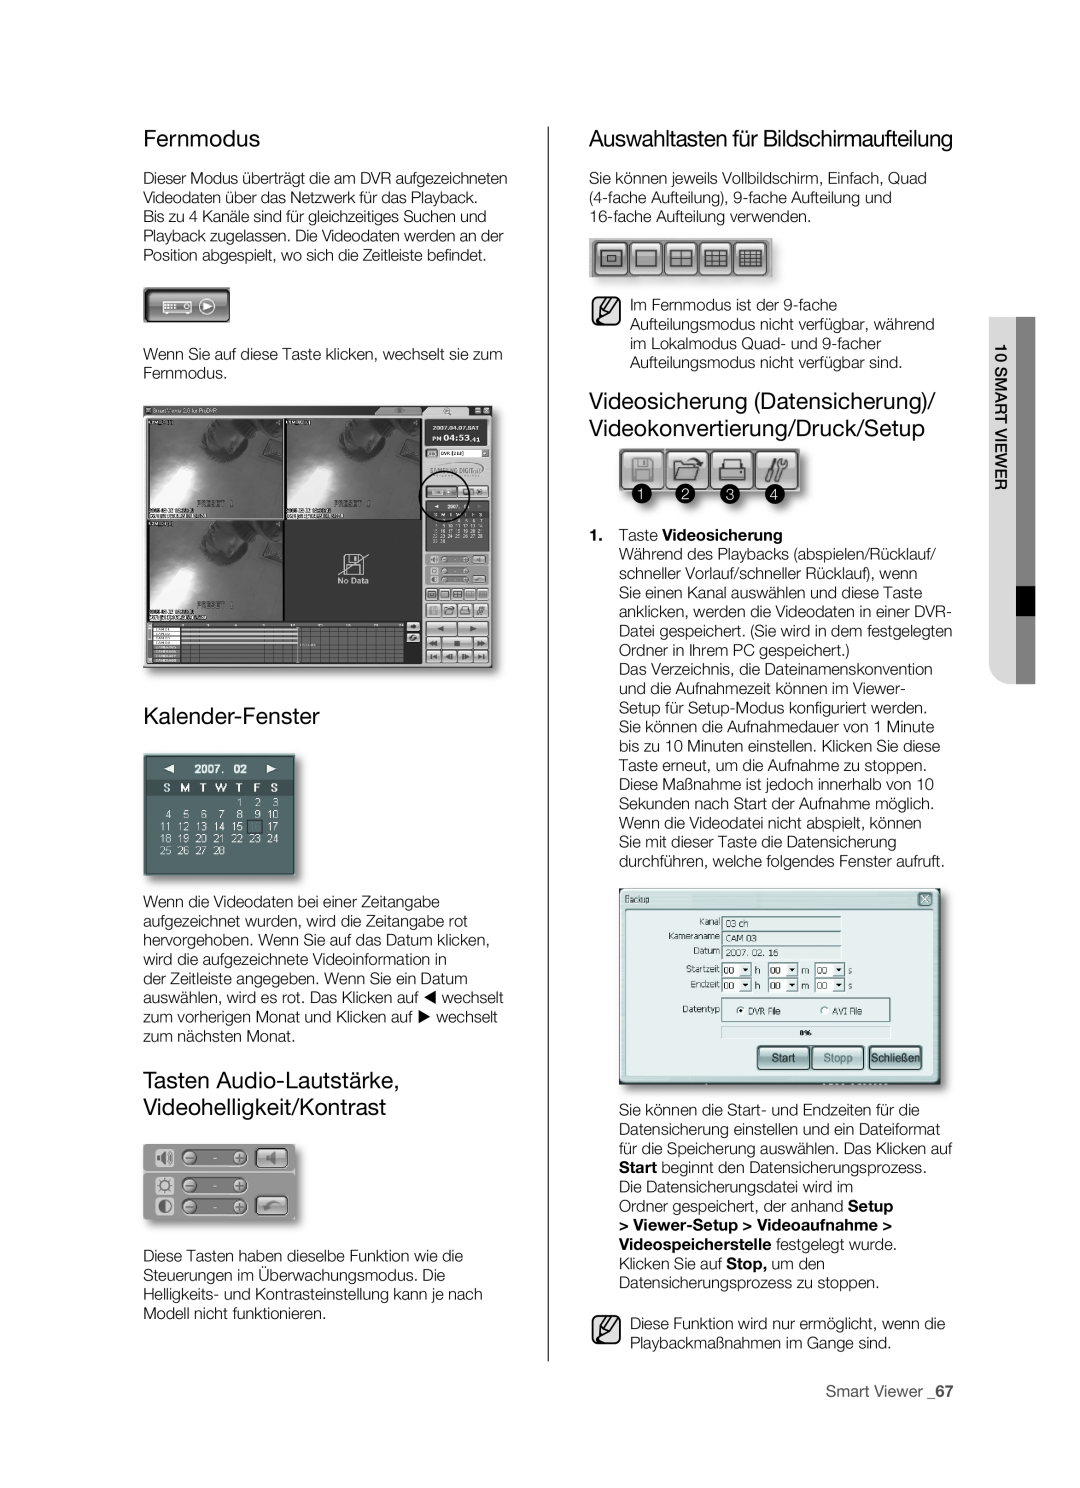 Samsung SHR-5082P manual Fernmodus, Kalender-Fenster, Tasten Audio-Lautstärke Videohelligkeit/Kontrast, 1 2 3, Smart Viewer 